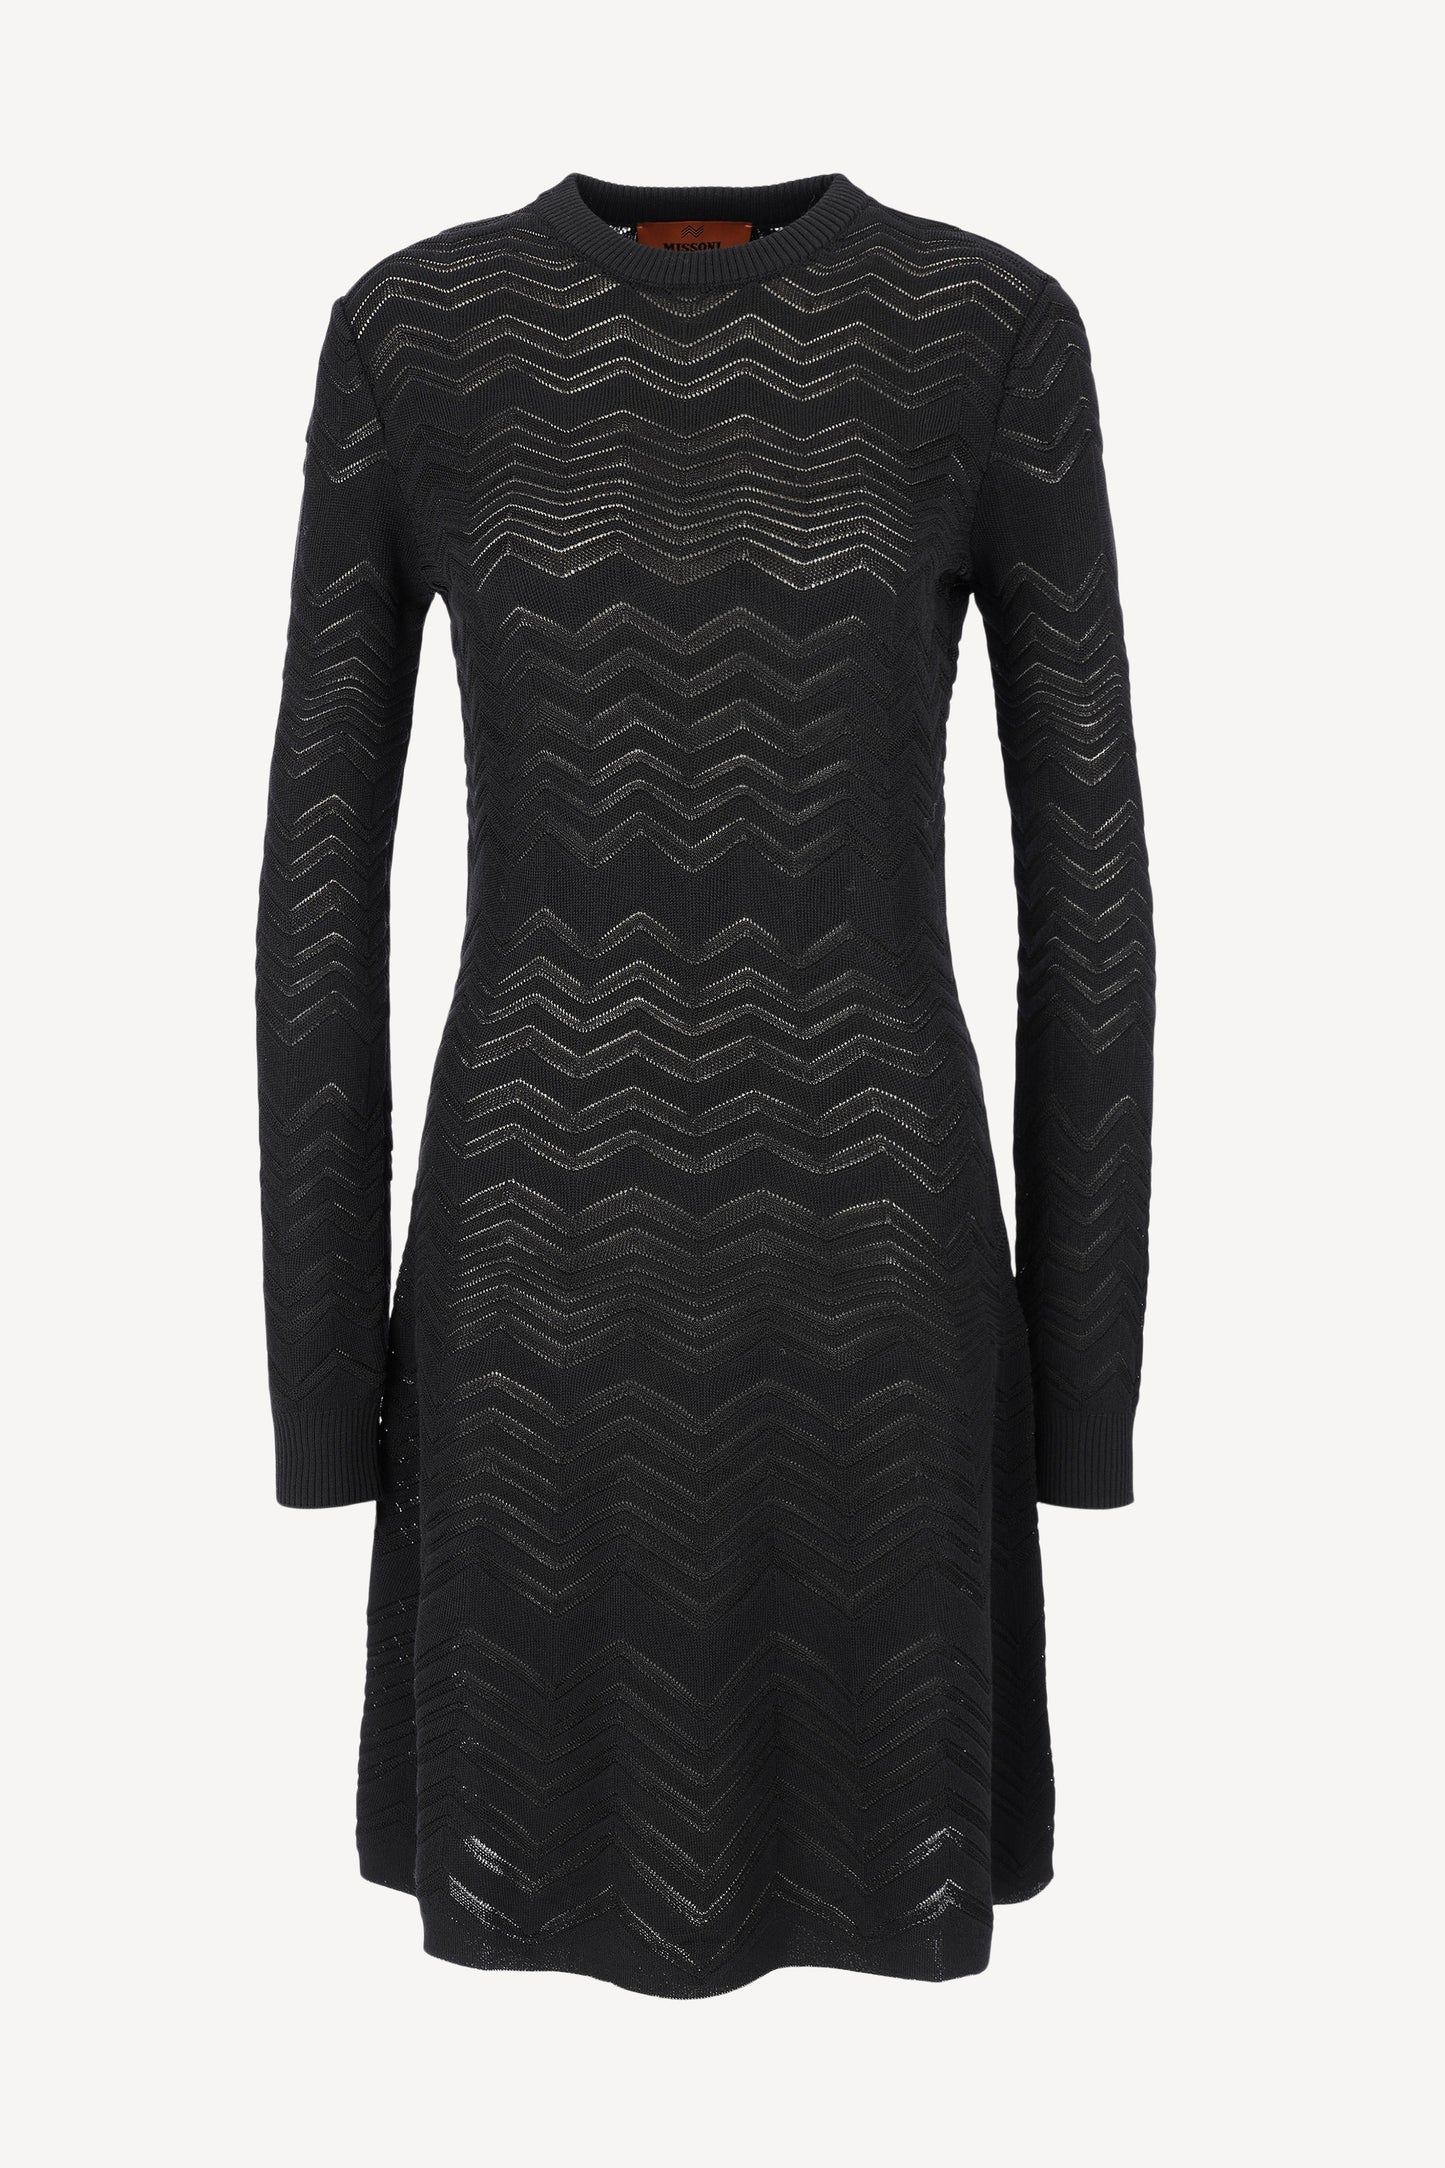 Kleid Long Sleeve in Black BeautyMissoni - Anita Hass